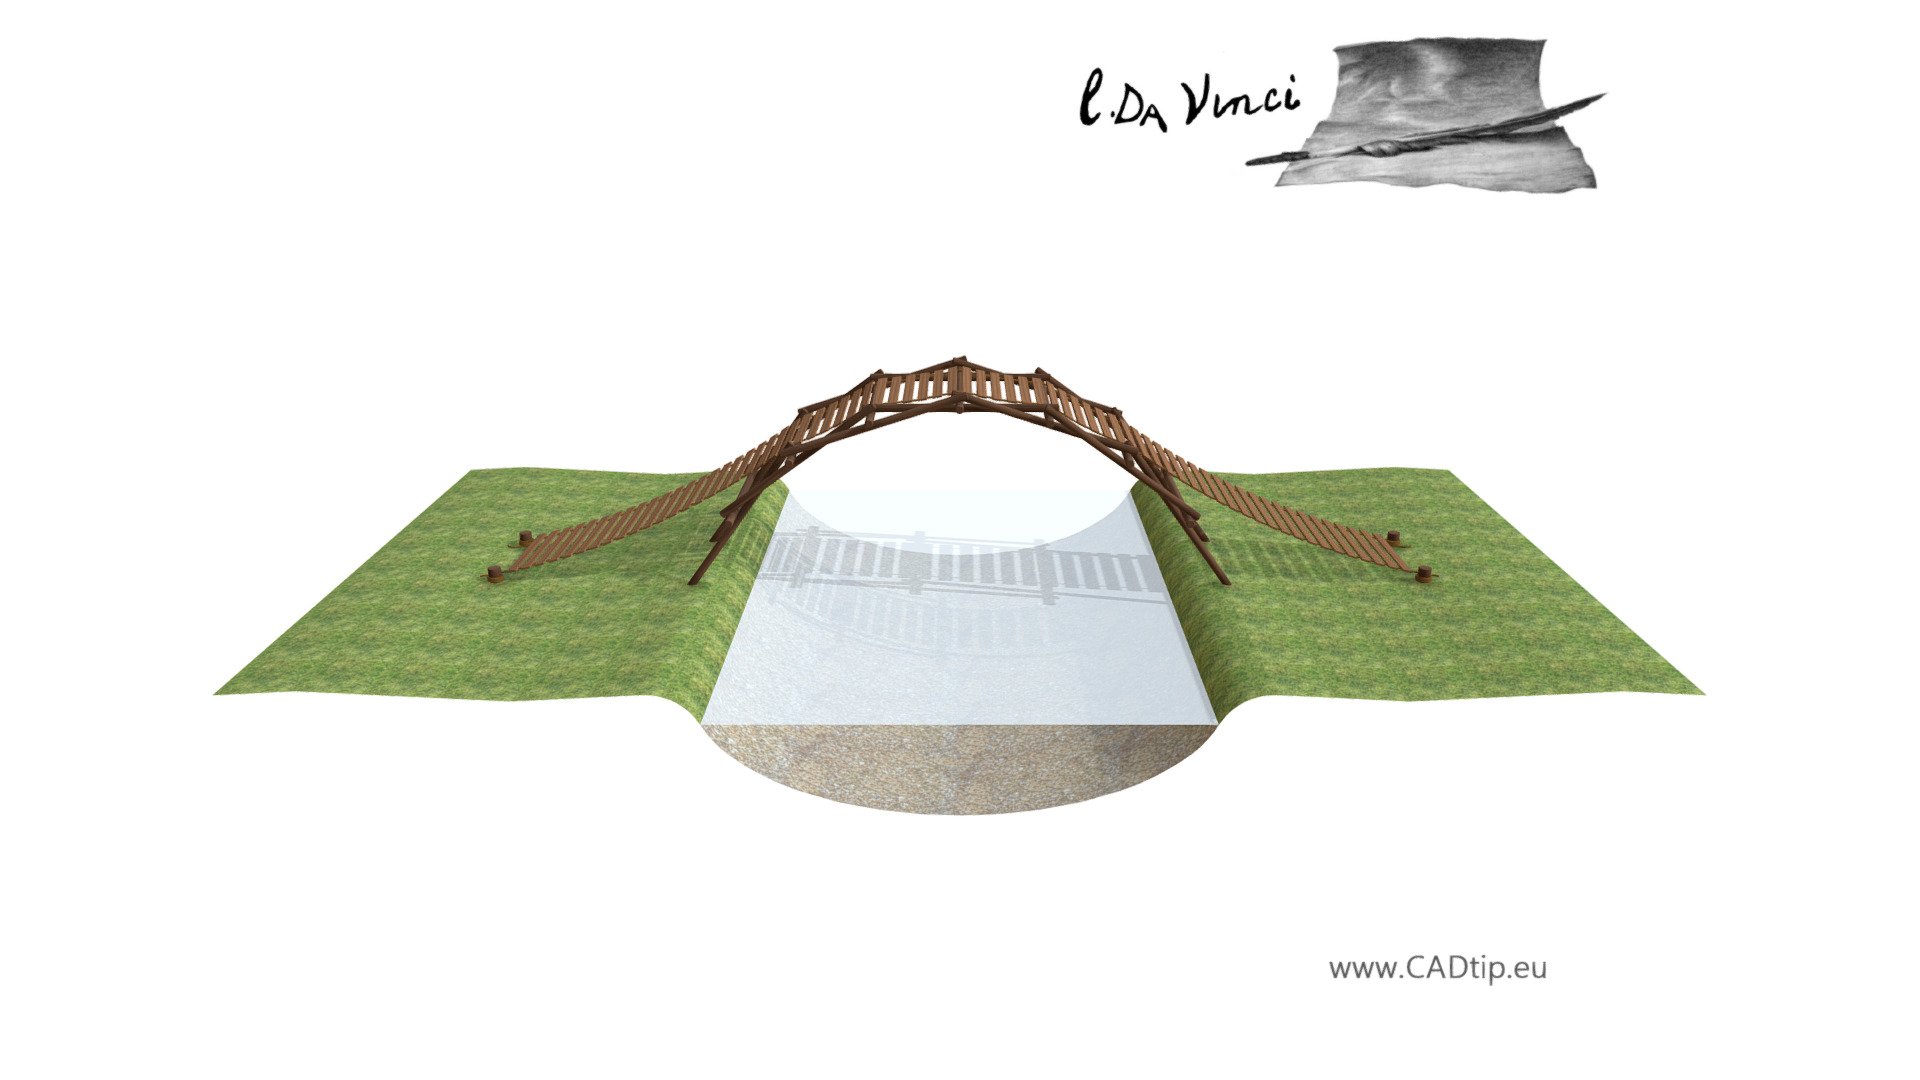 Emergency bridge, Leonardo da Vinci; Codex Atlanticus 0069r  

More: http://leonardo.cadtip.eu/2017/10/26/nouzovy-most/ - Emergency bridge - 3D model by Mar.K 3d model